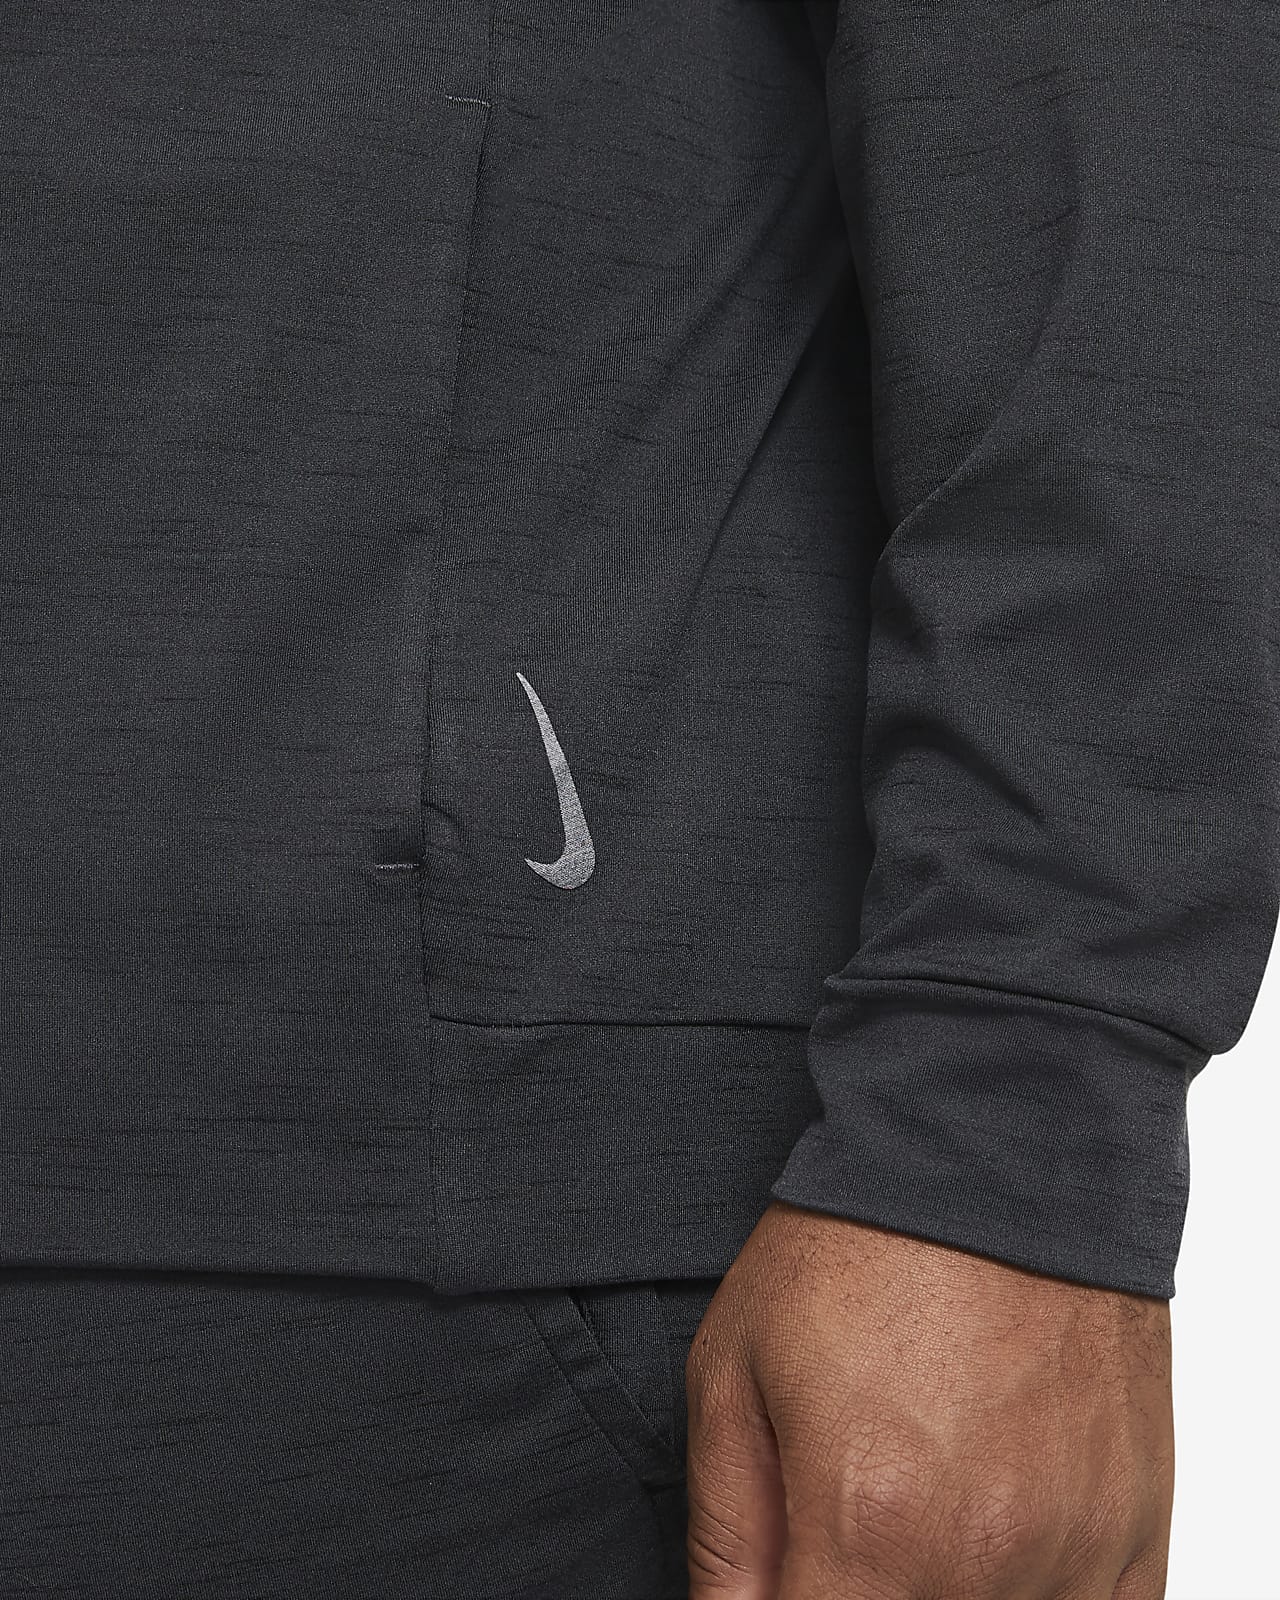 Nike Dri-Fit Yoga T-shirt Men's - Black • Prices »